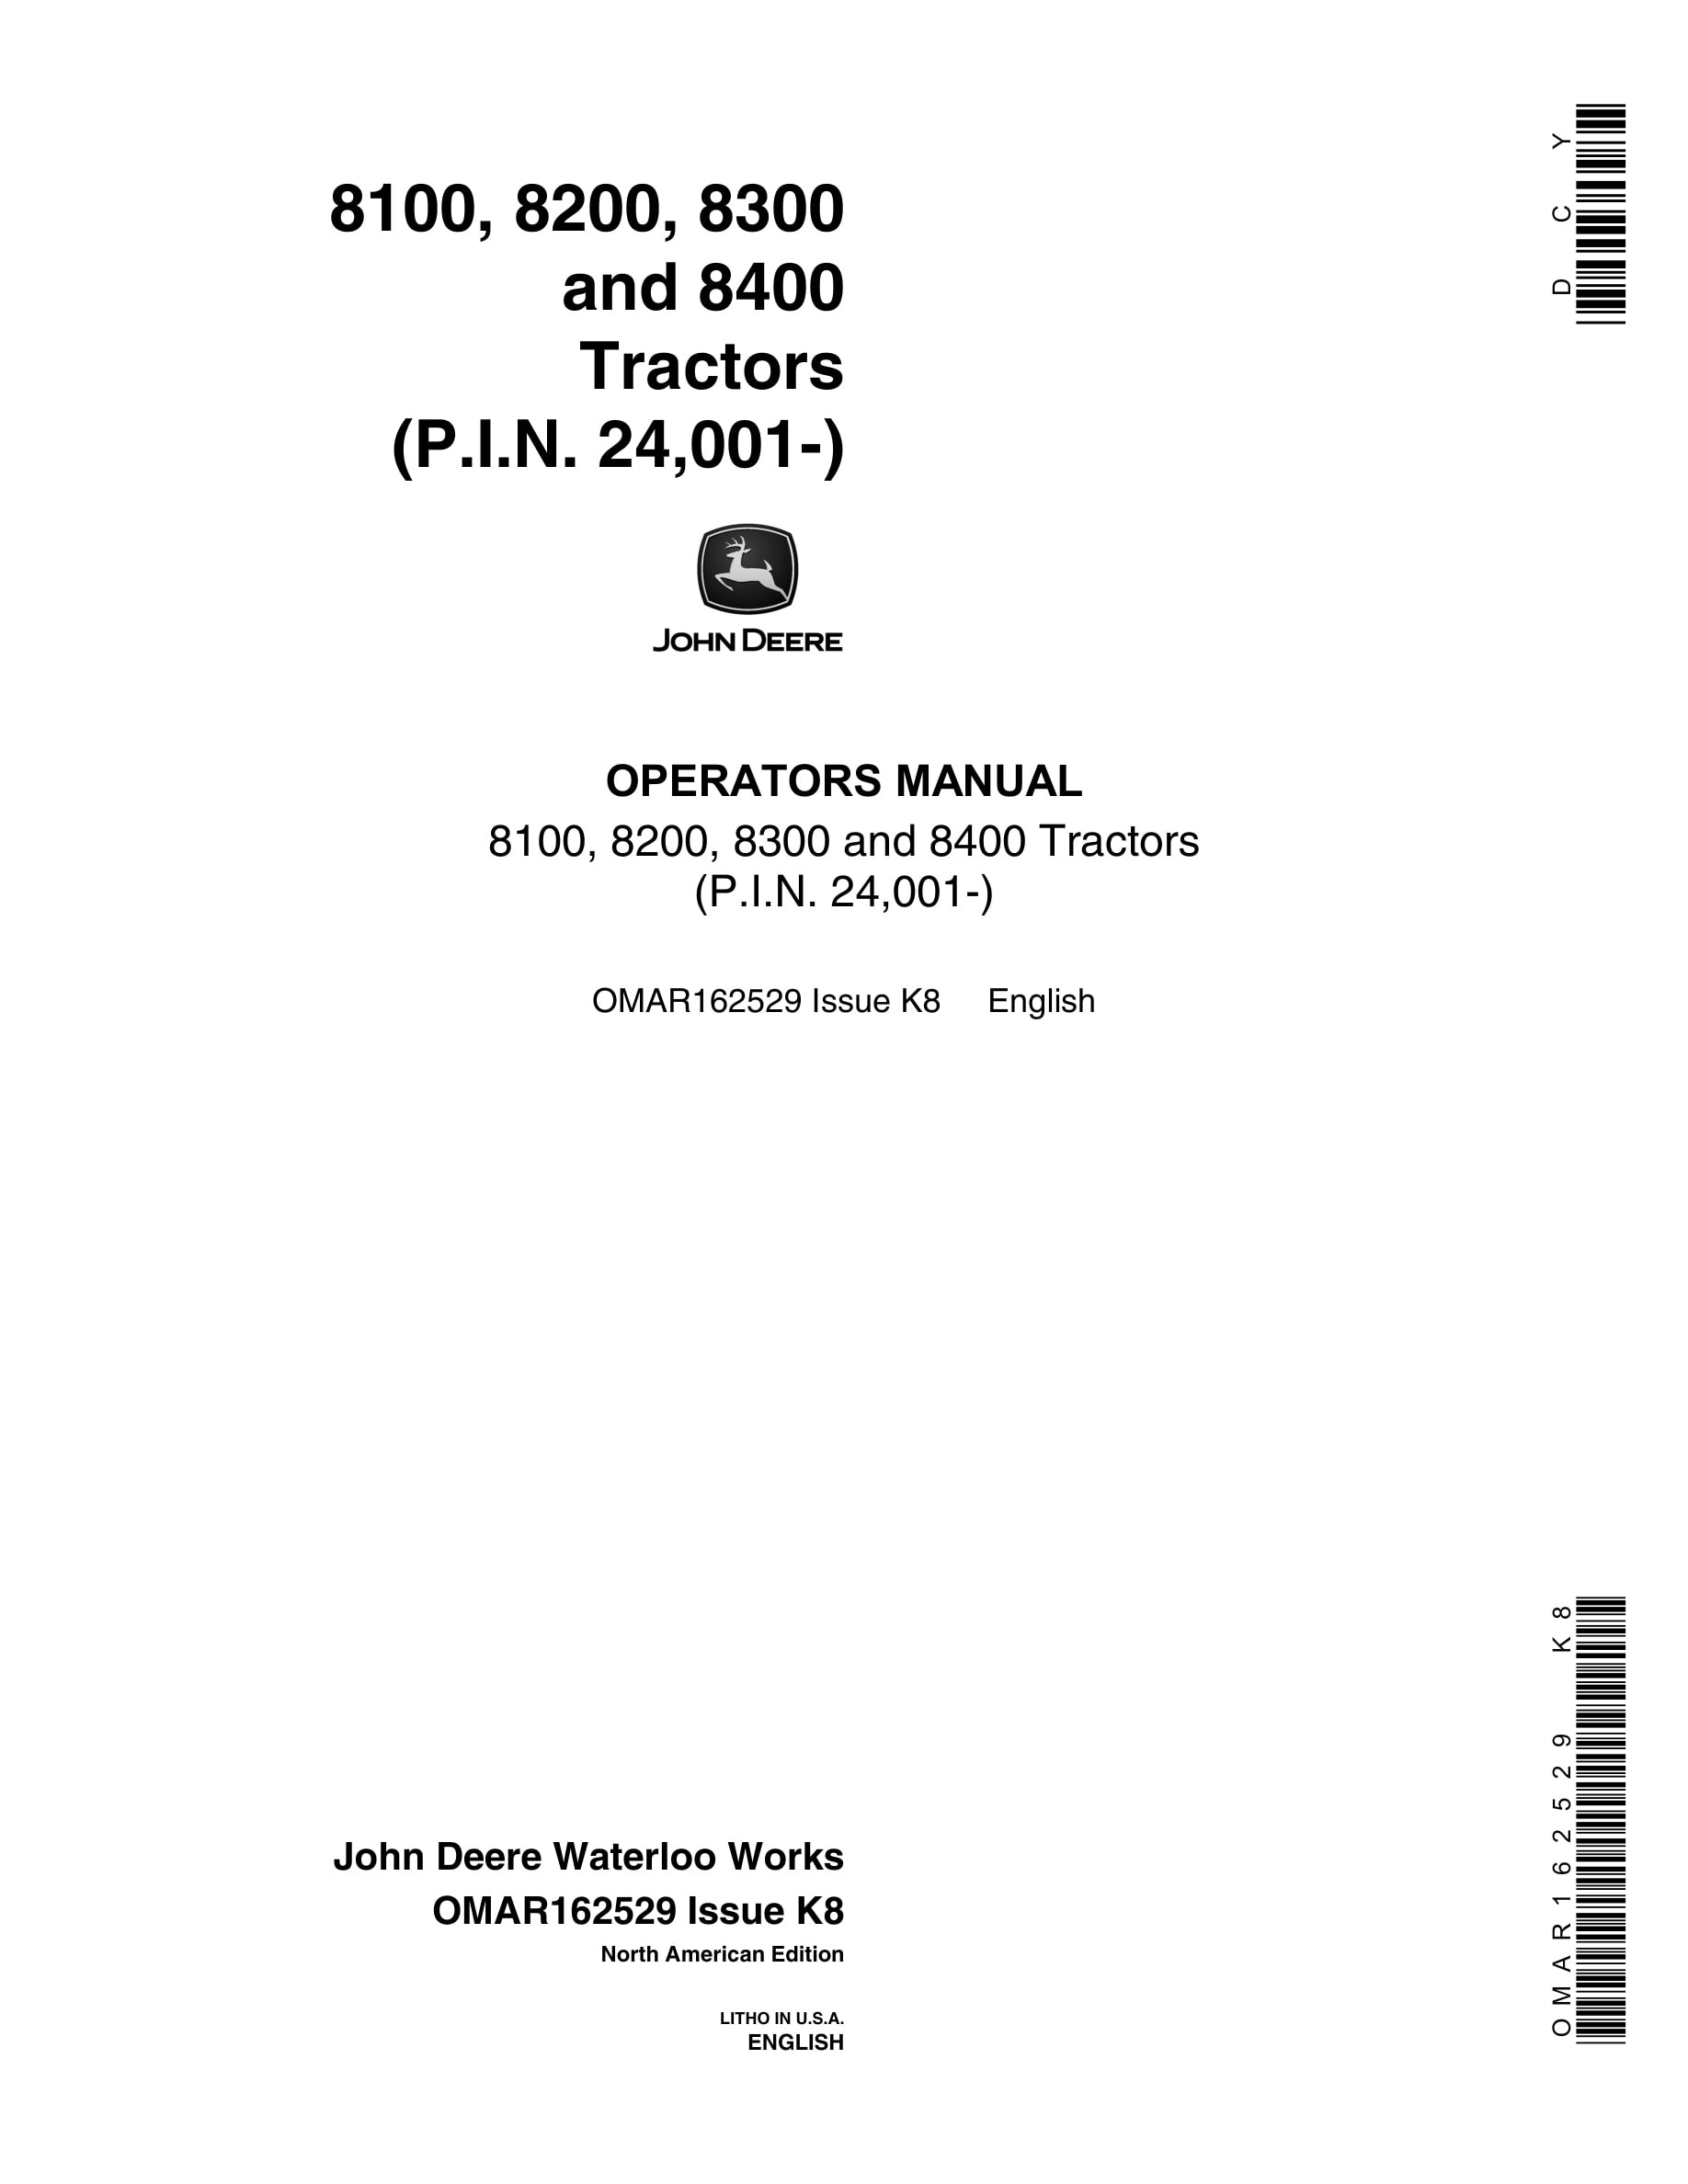 John Deere 8100, 8200, 8300 and 8400 Tractor Operator Manual OMAR162529-1